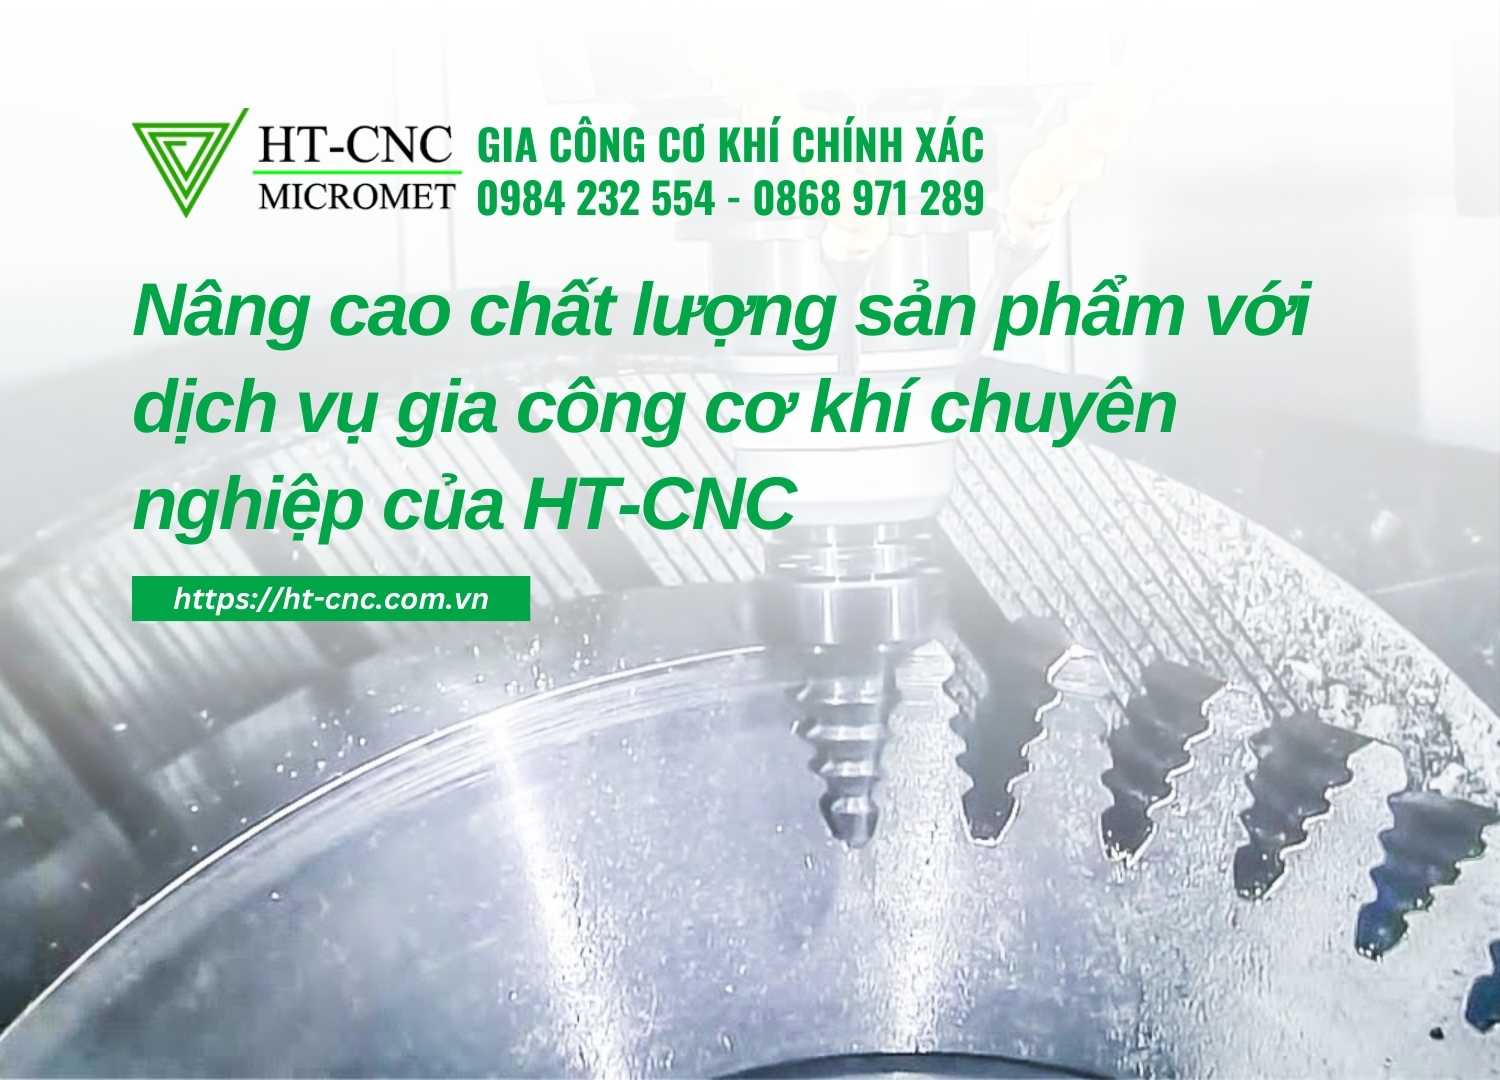 Nang-cao-chat-luong-san-pham-voi-dich-vu-gia-cong-co-khi-chuyen-nghiep-cua-HT-CNC